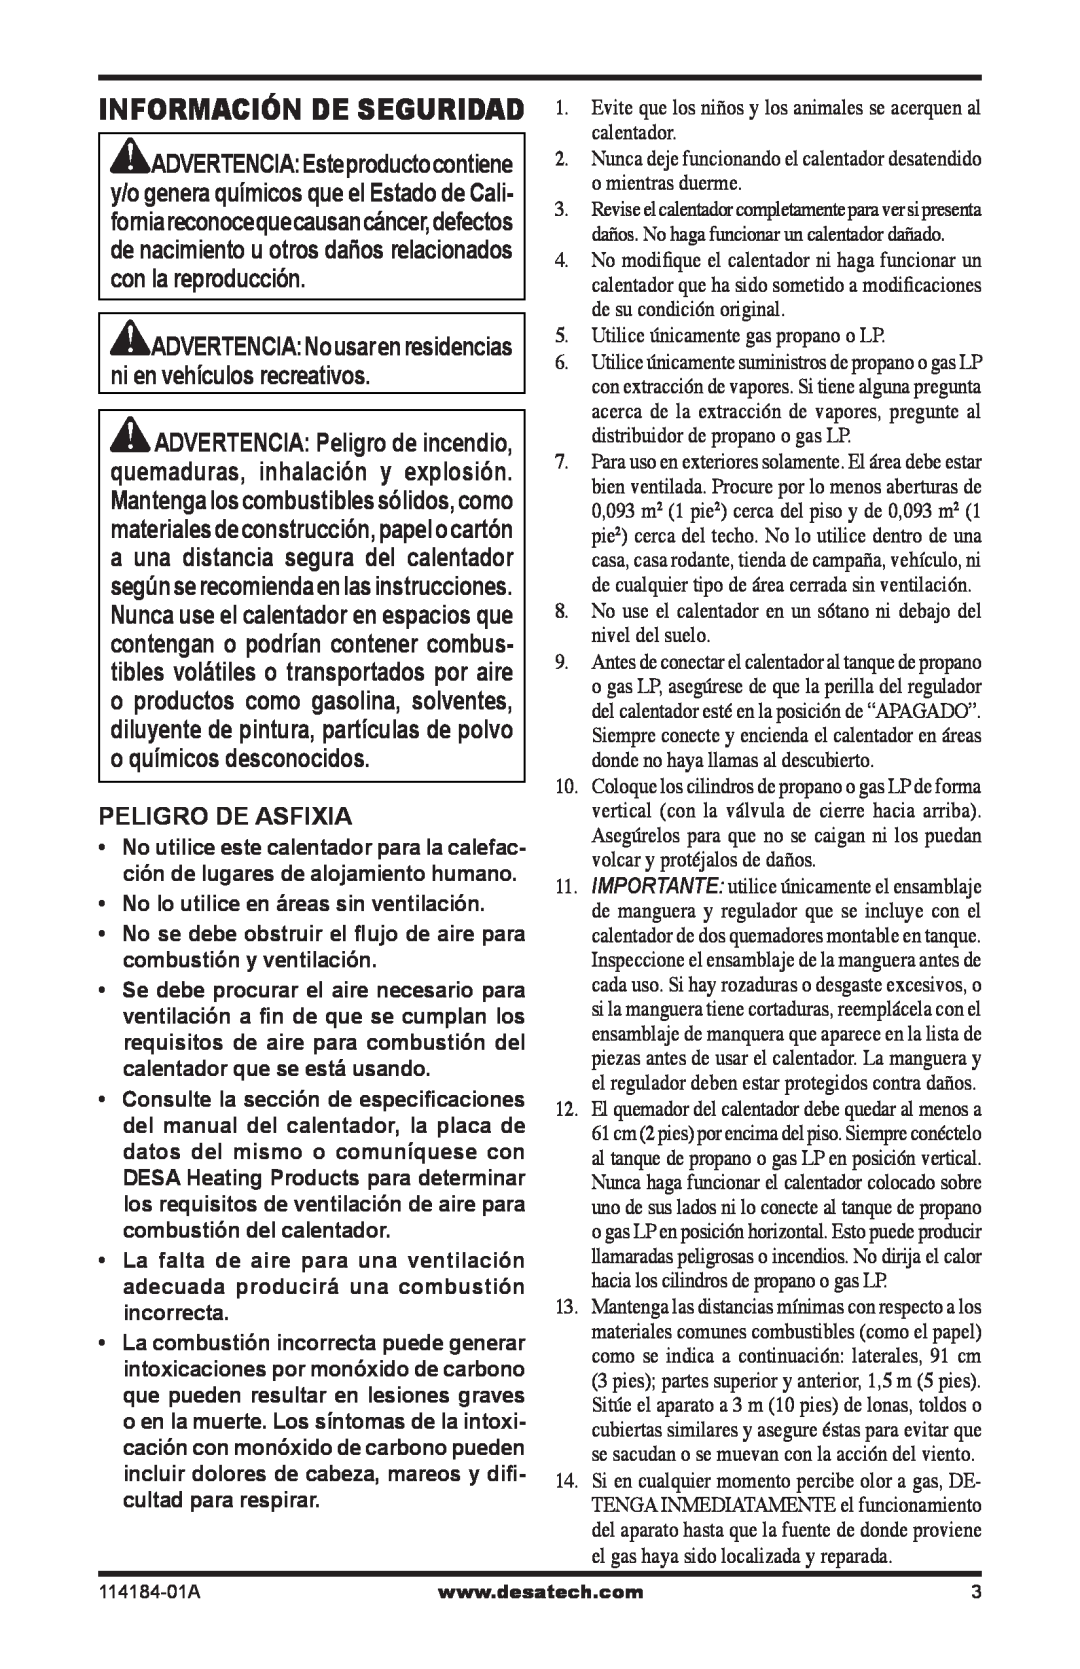 Desa SPC-30RB, TT15, N15, SPC-15RB owner manual Información De Seguridad, Peligro De Asfixia 